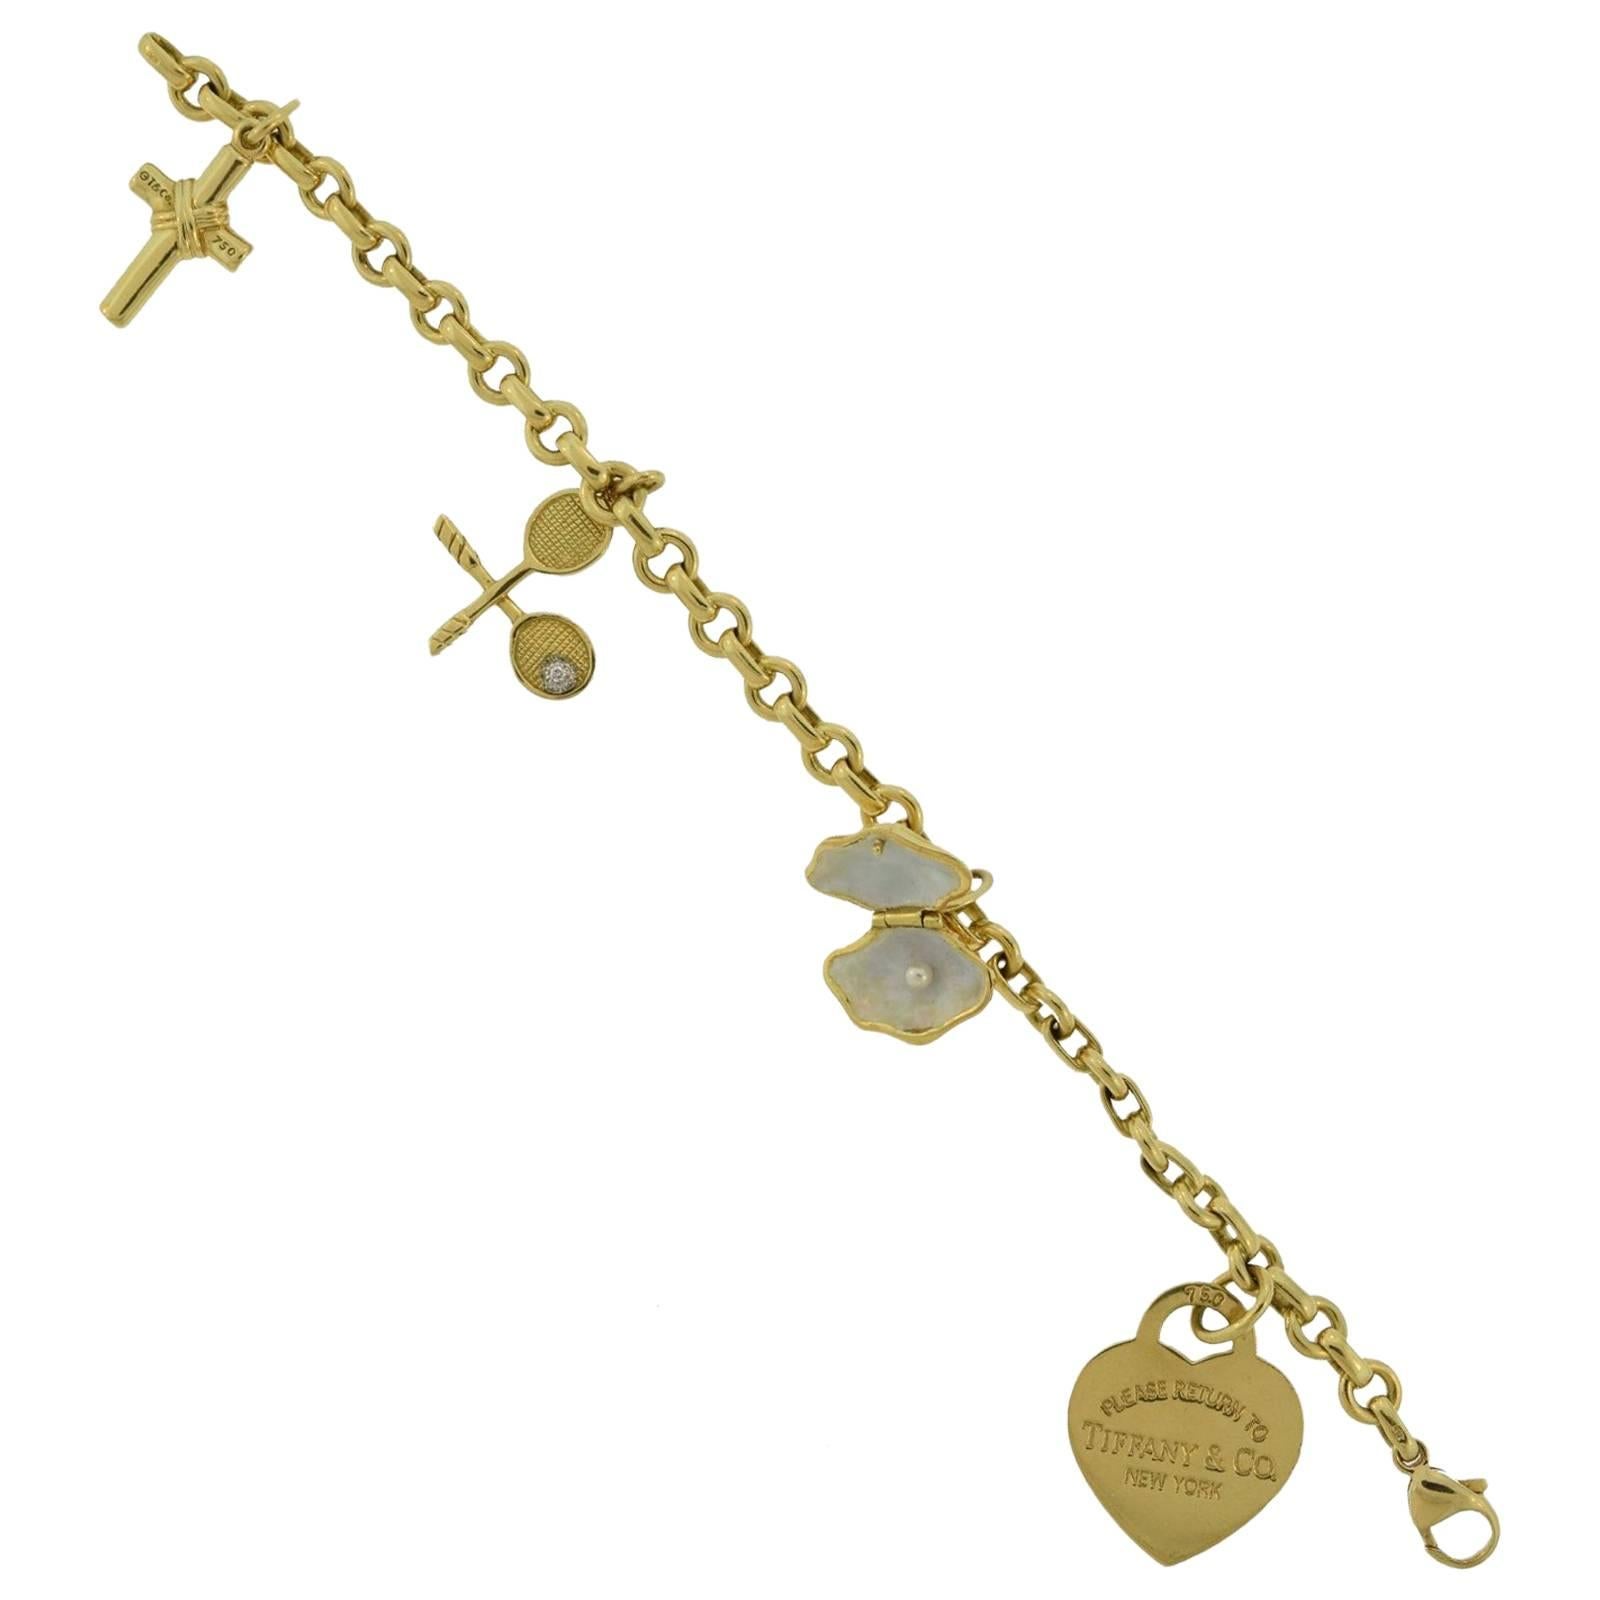 Tiffany & Co. "RETURN TO HEART" One of a Kind Charm Bracelet